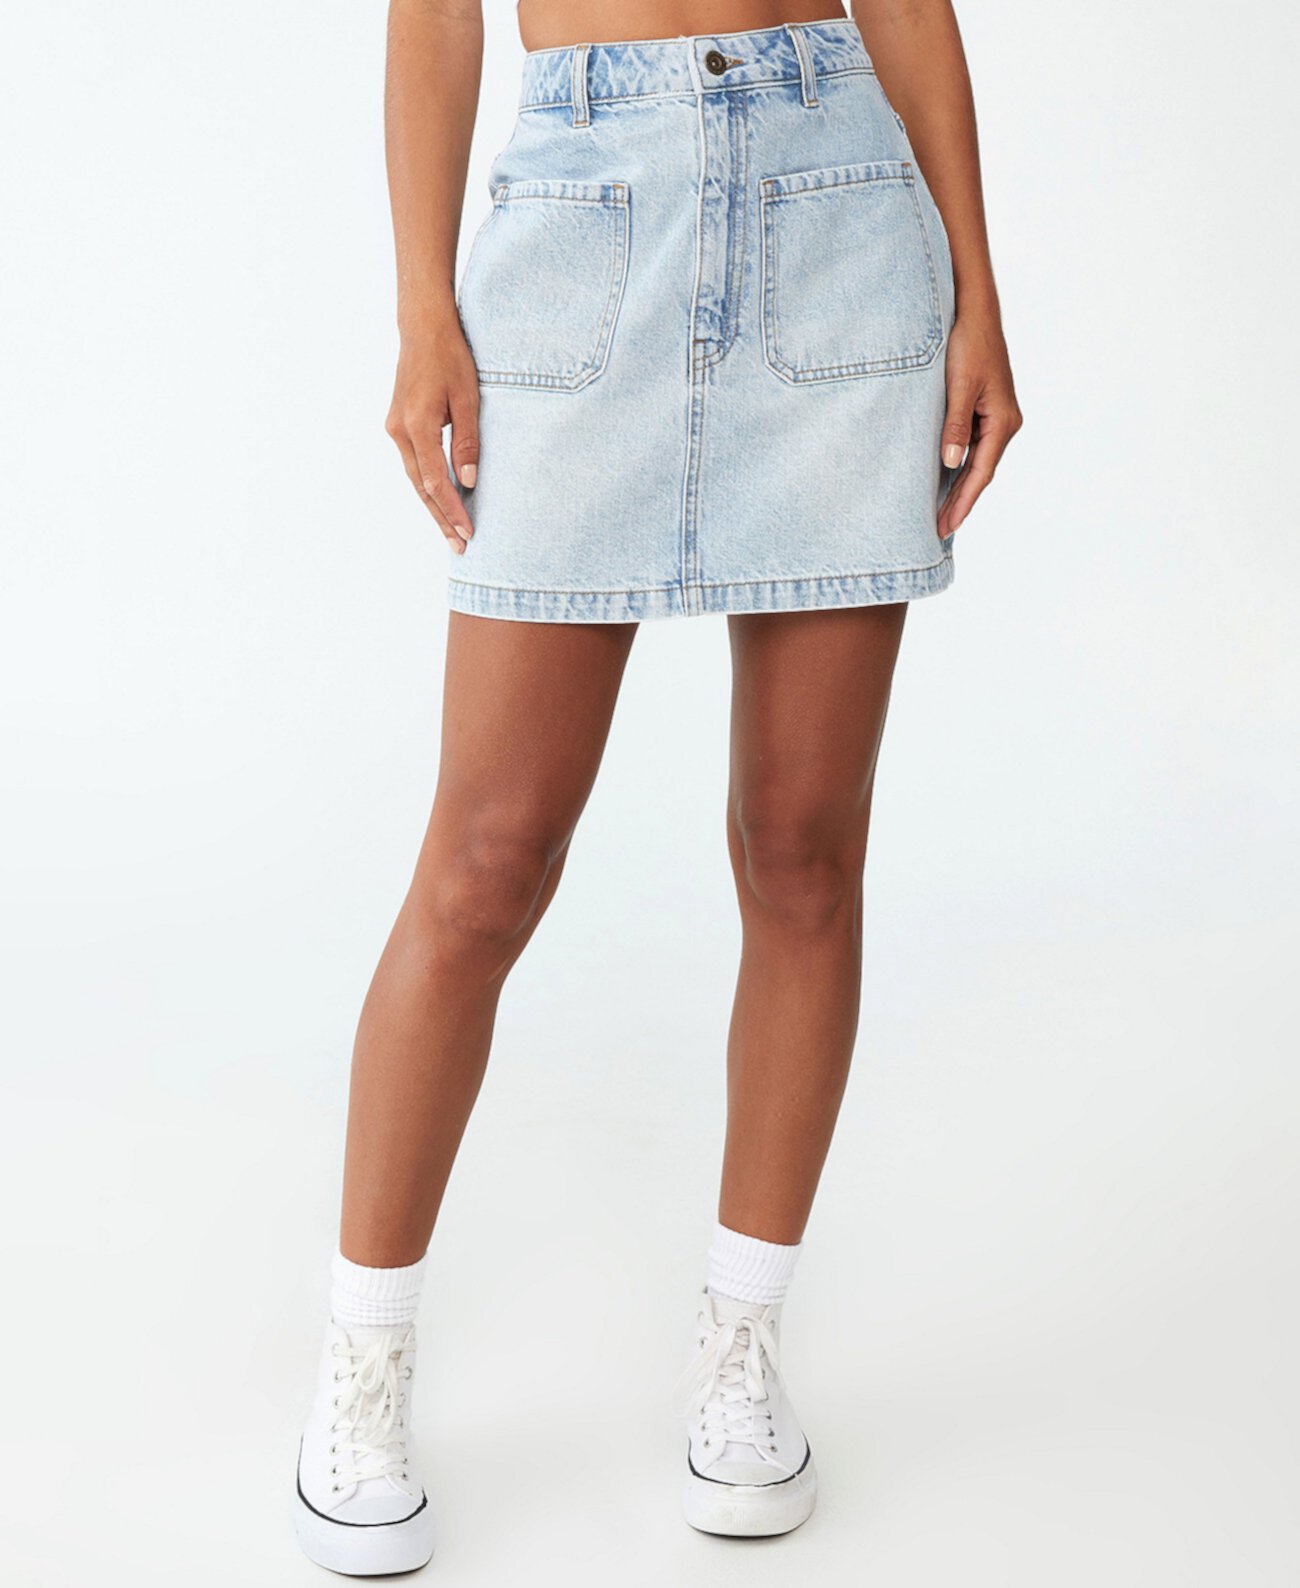 Женская джинсовая мини-юбка Mod COTTON ON